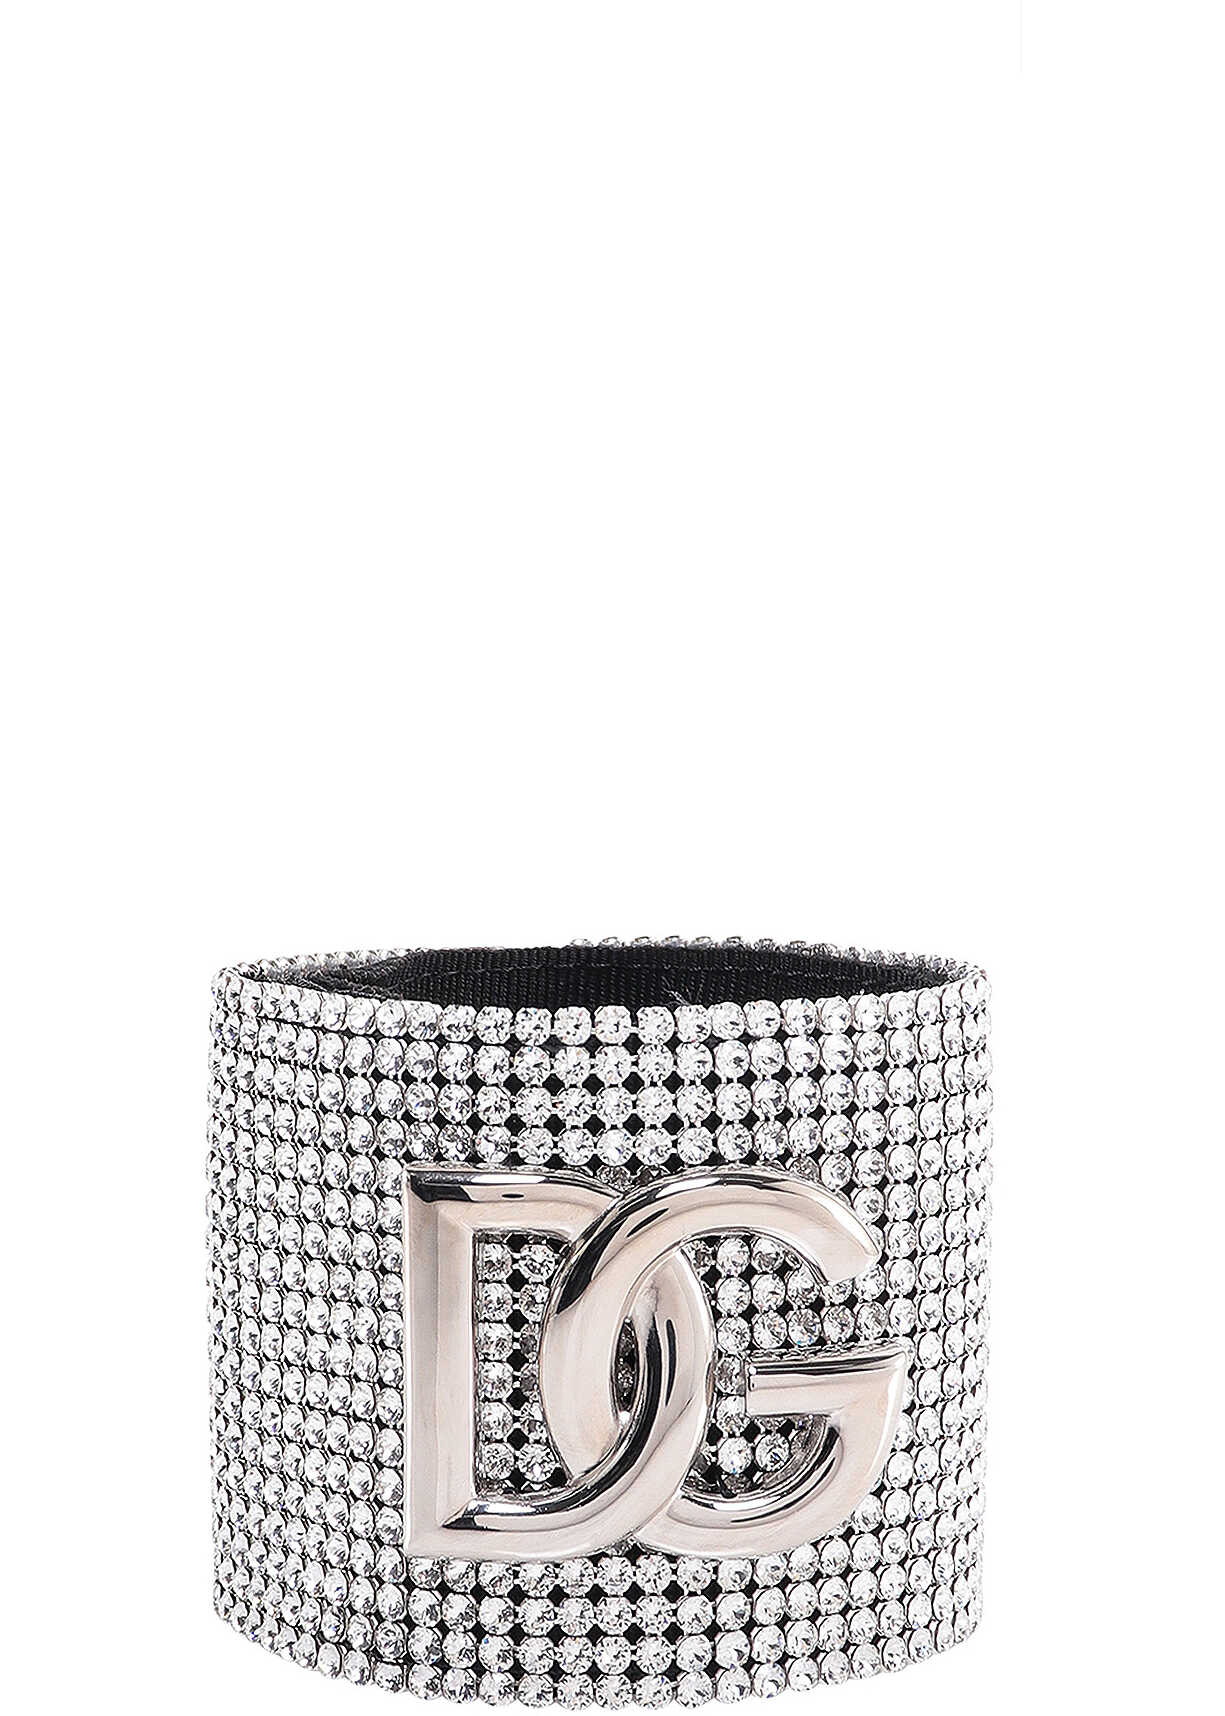 Dolce & Gabbana Bracelet Silver image0